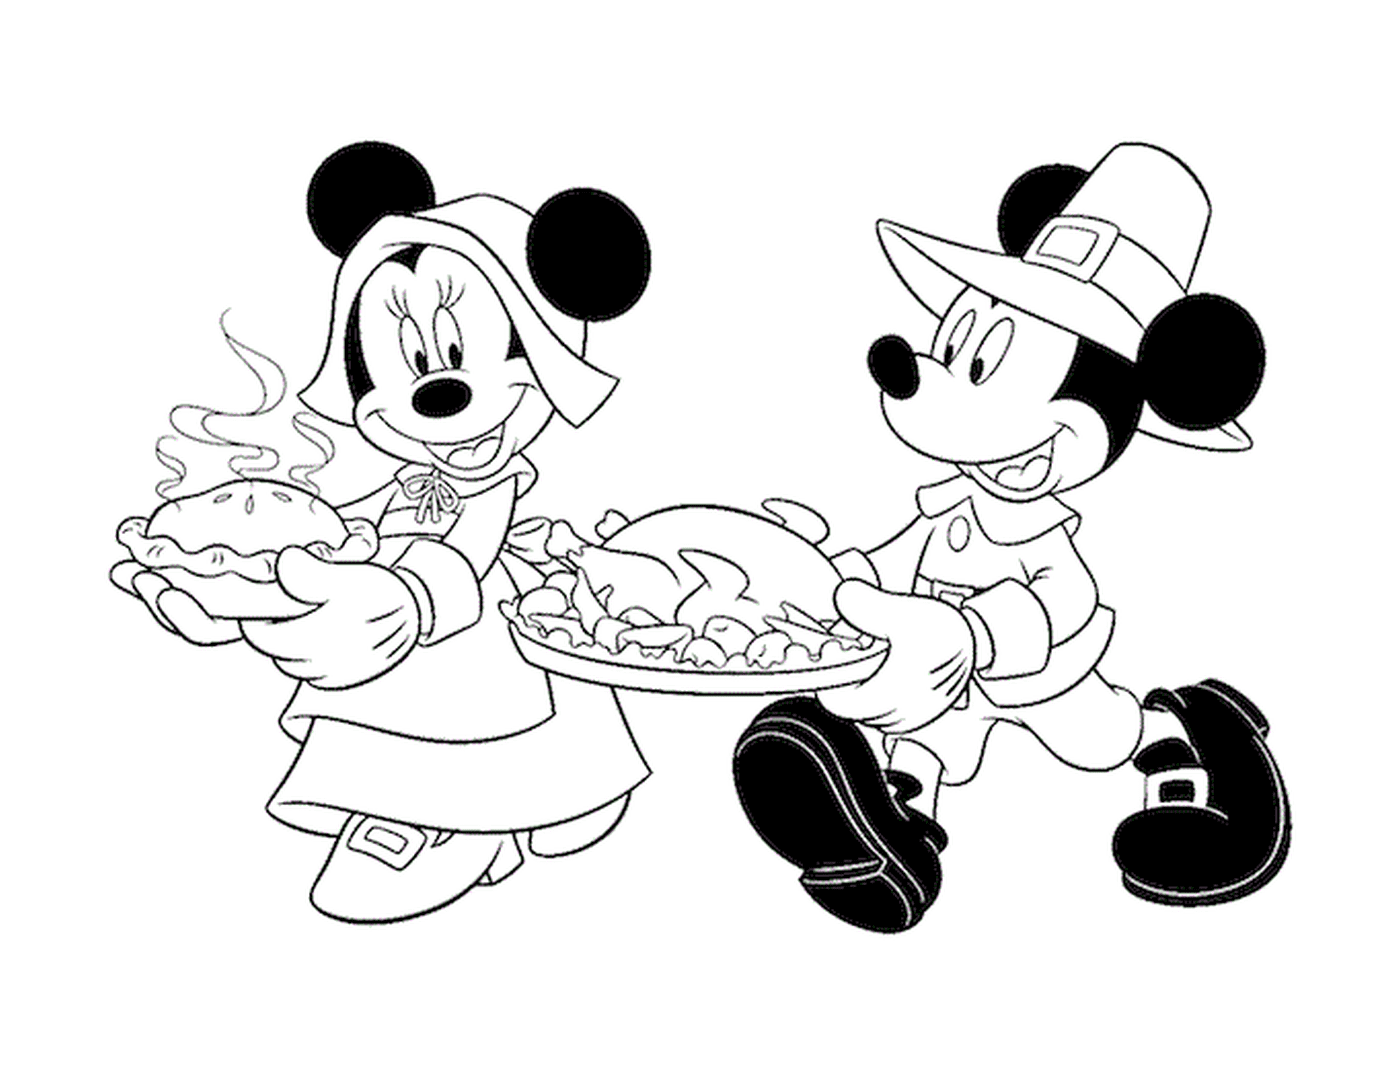  Mickey Mouse sosteniendo un plato de pavo 